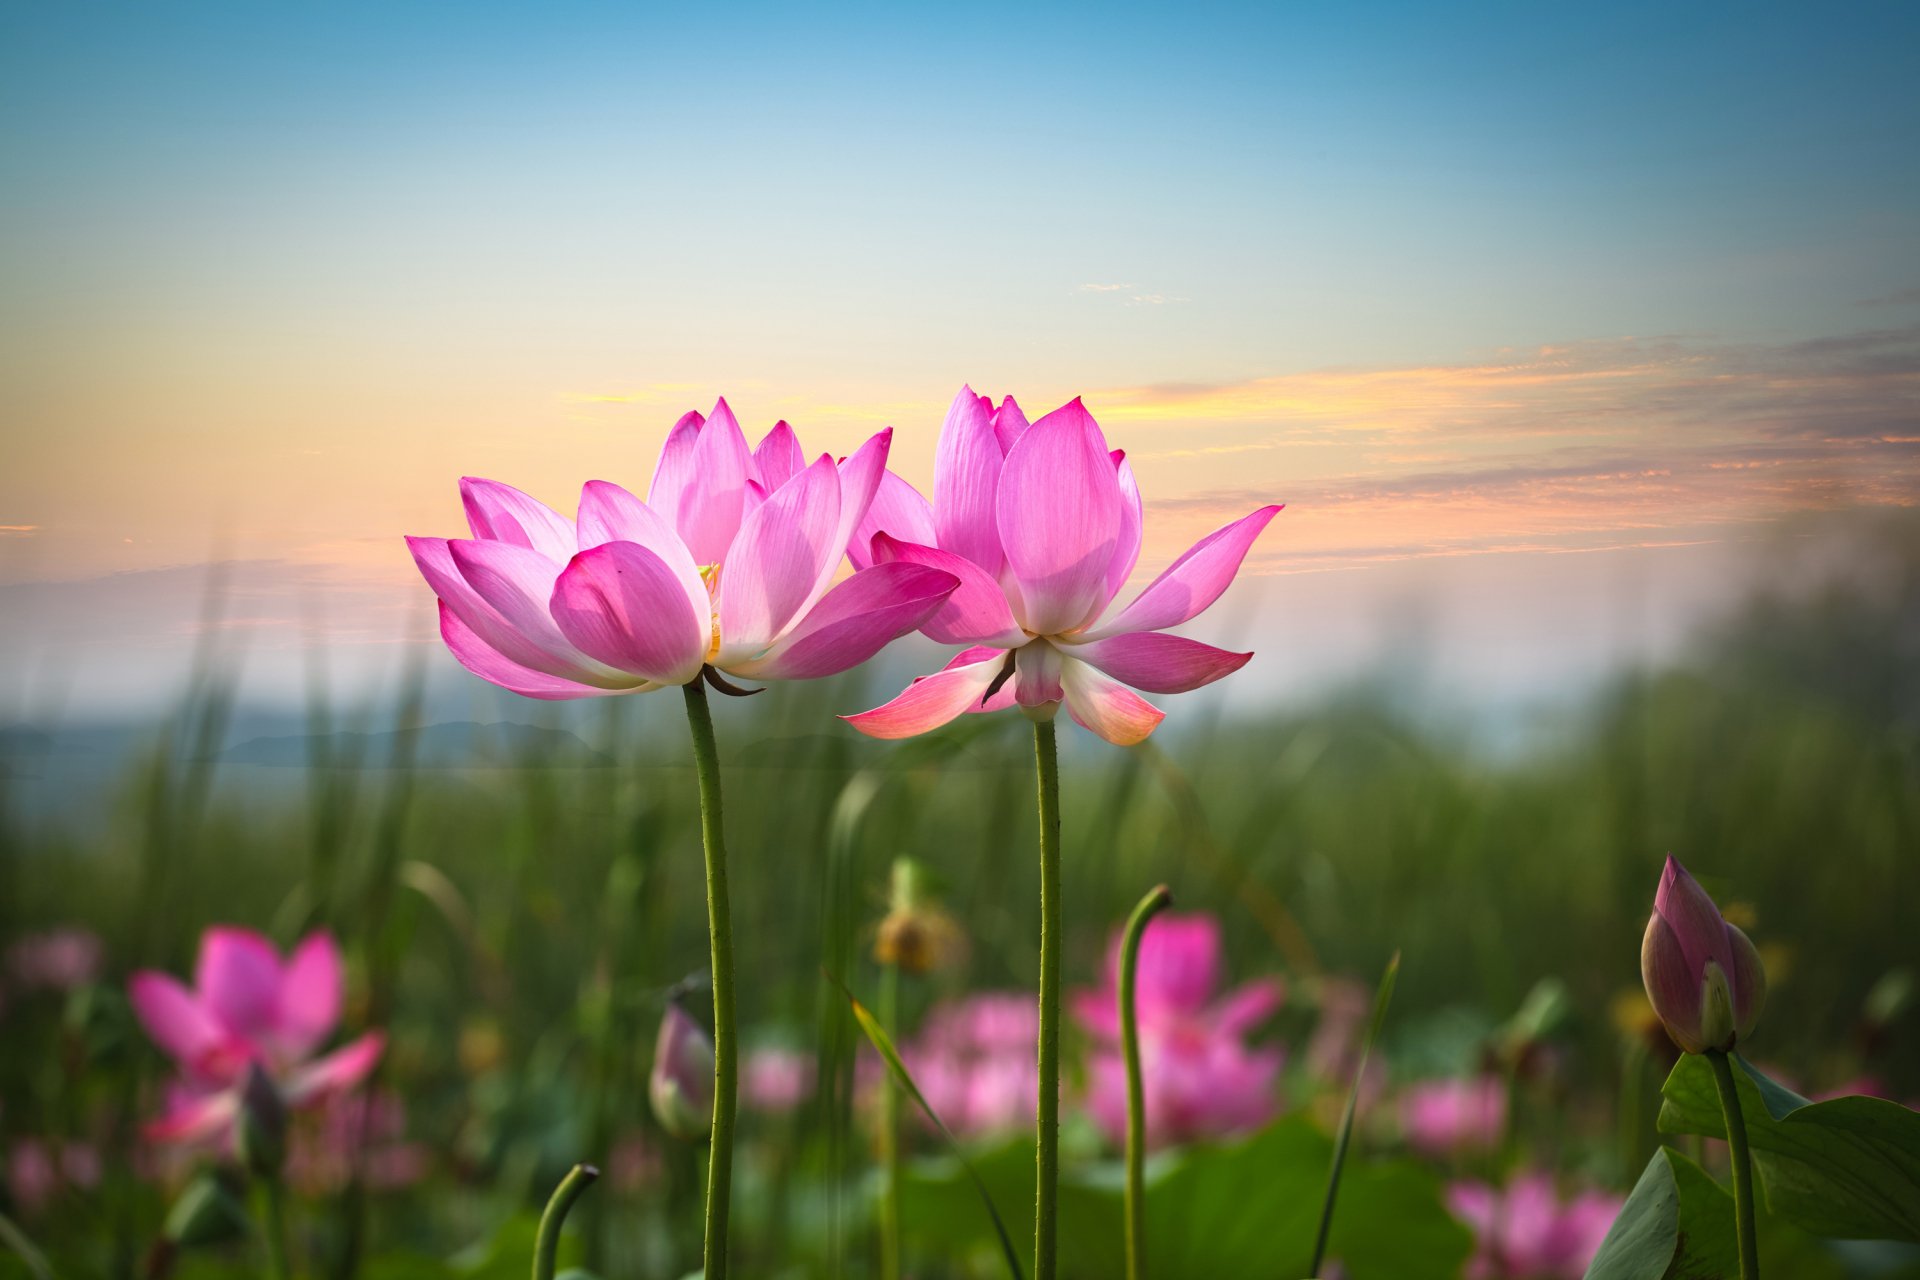 Lotus: Sen - loài hoa linh thiêng đang được truyền thống văn hóa Việt Nam gìn giữ và phát triển. Những bức ảnh của loài hoa này được chụp đúng lúc, những phong cảnh tuyệt đẹp và cảm giác thanh thản của nó sẽ đem lại cho bạn những giây phút thăng hoa.